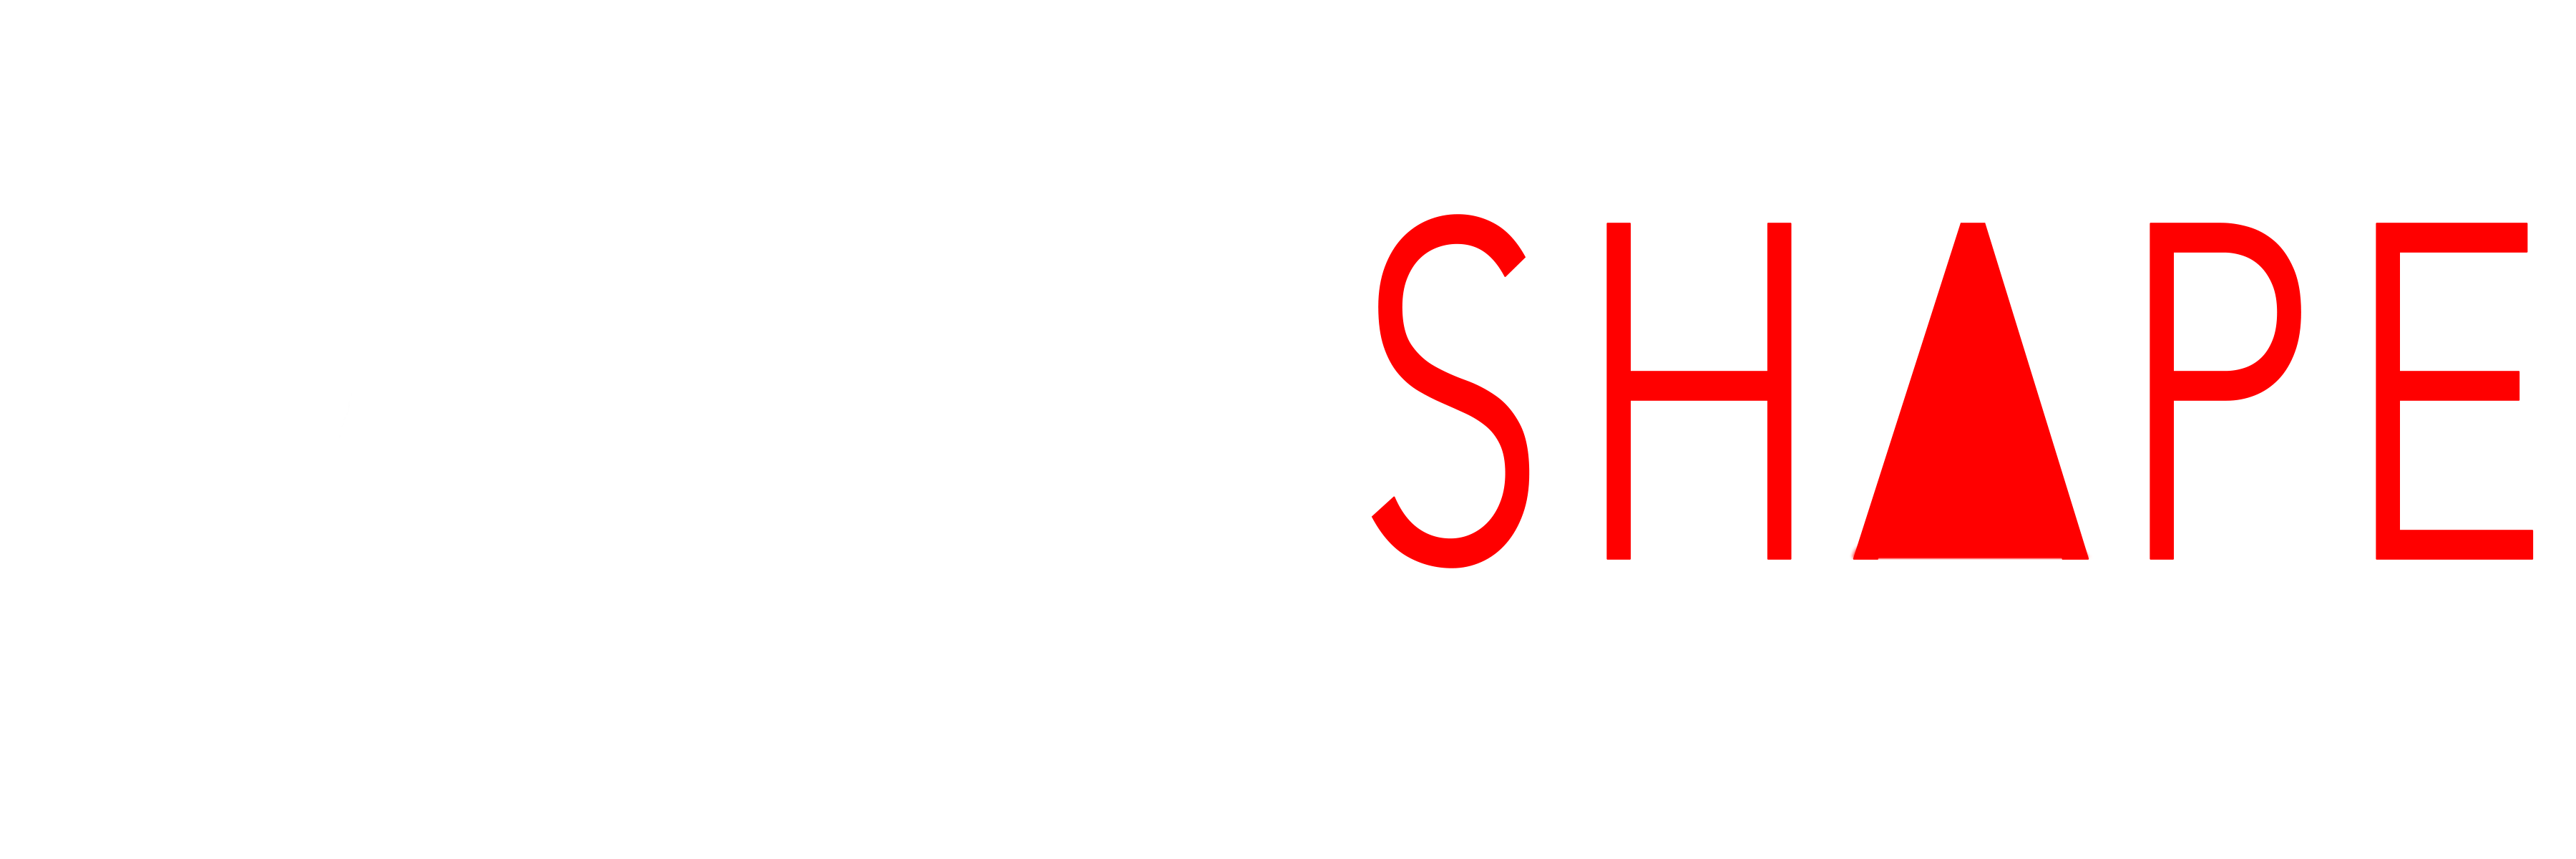 DANCE SHAPE